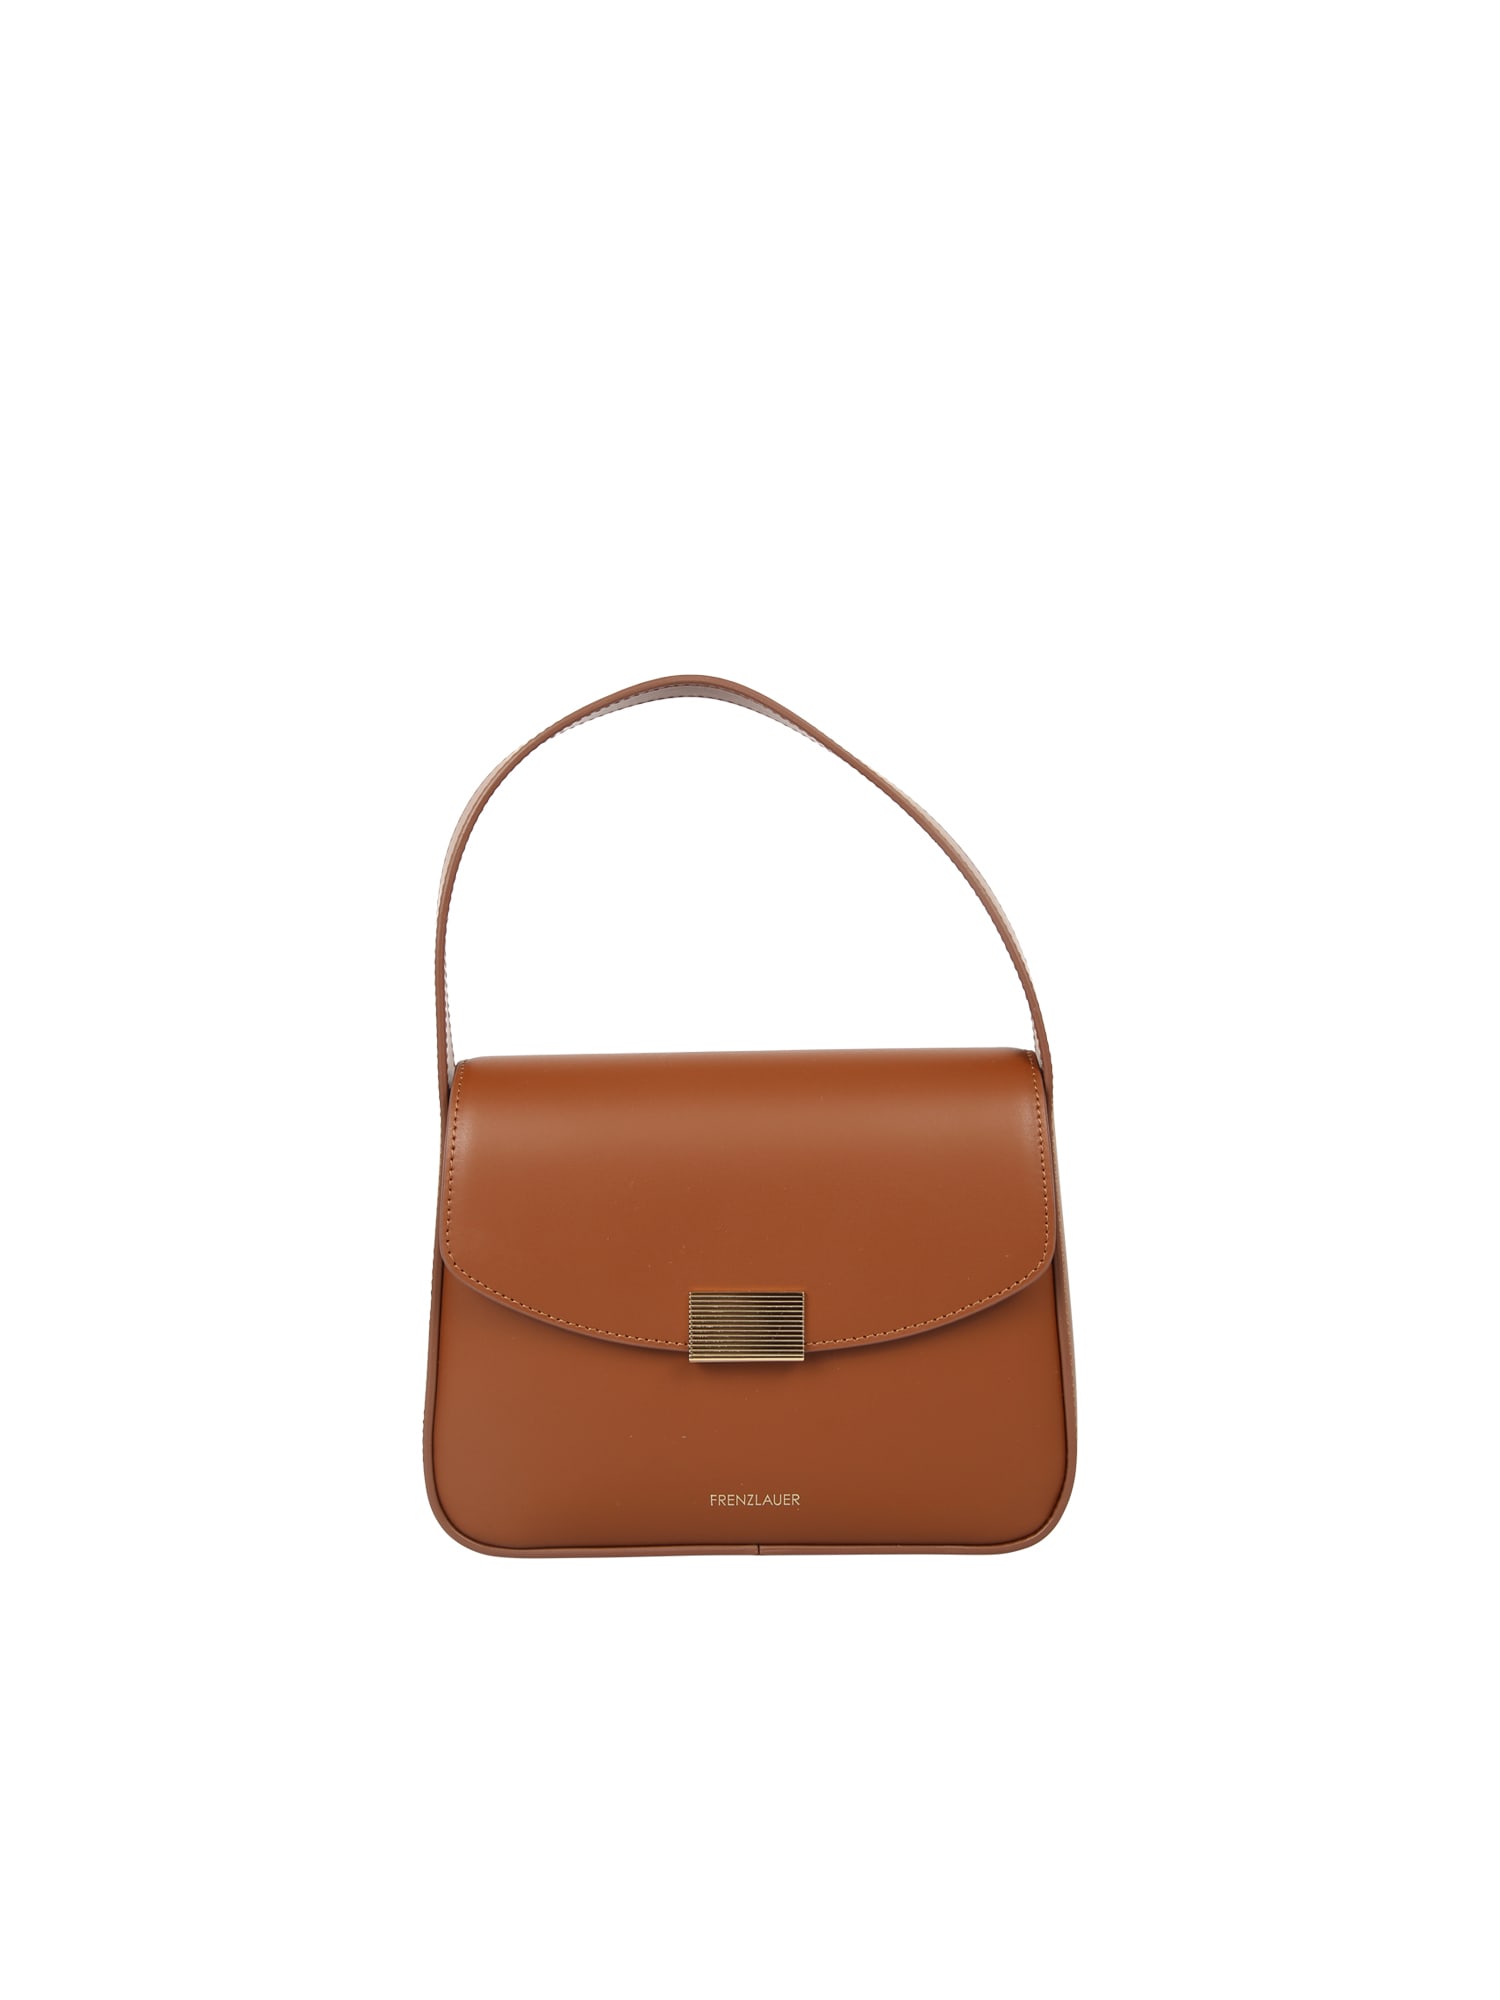 Frenzlauer Leather Handbag